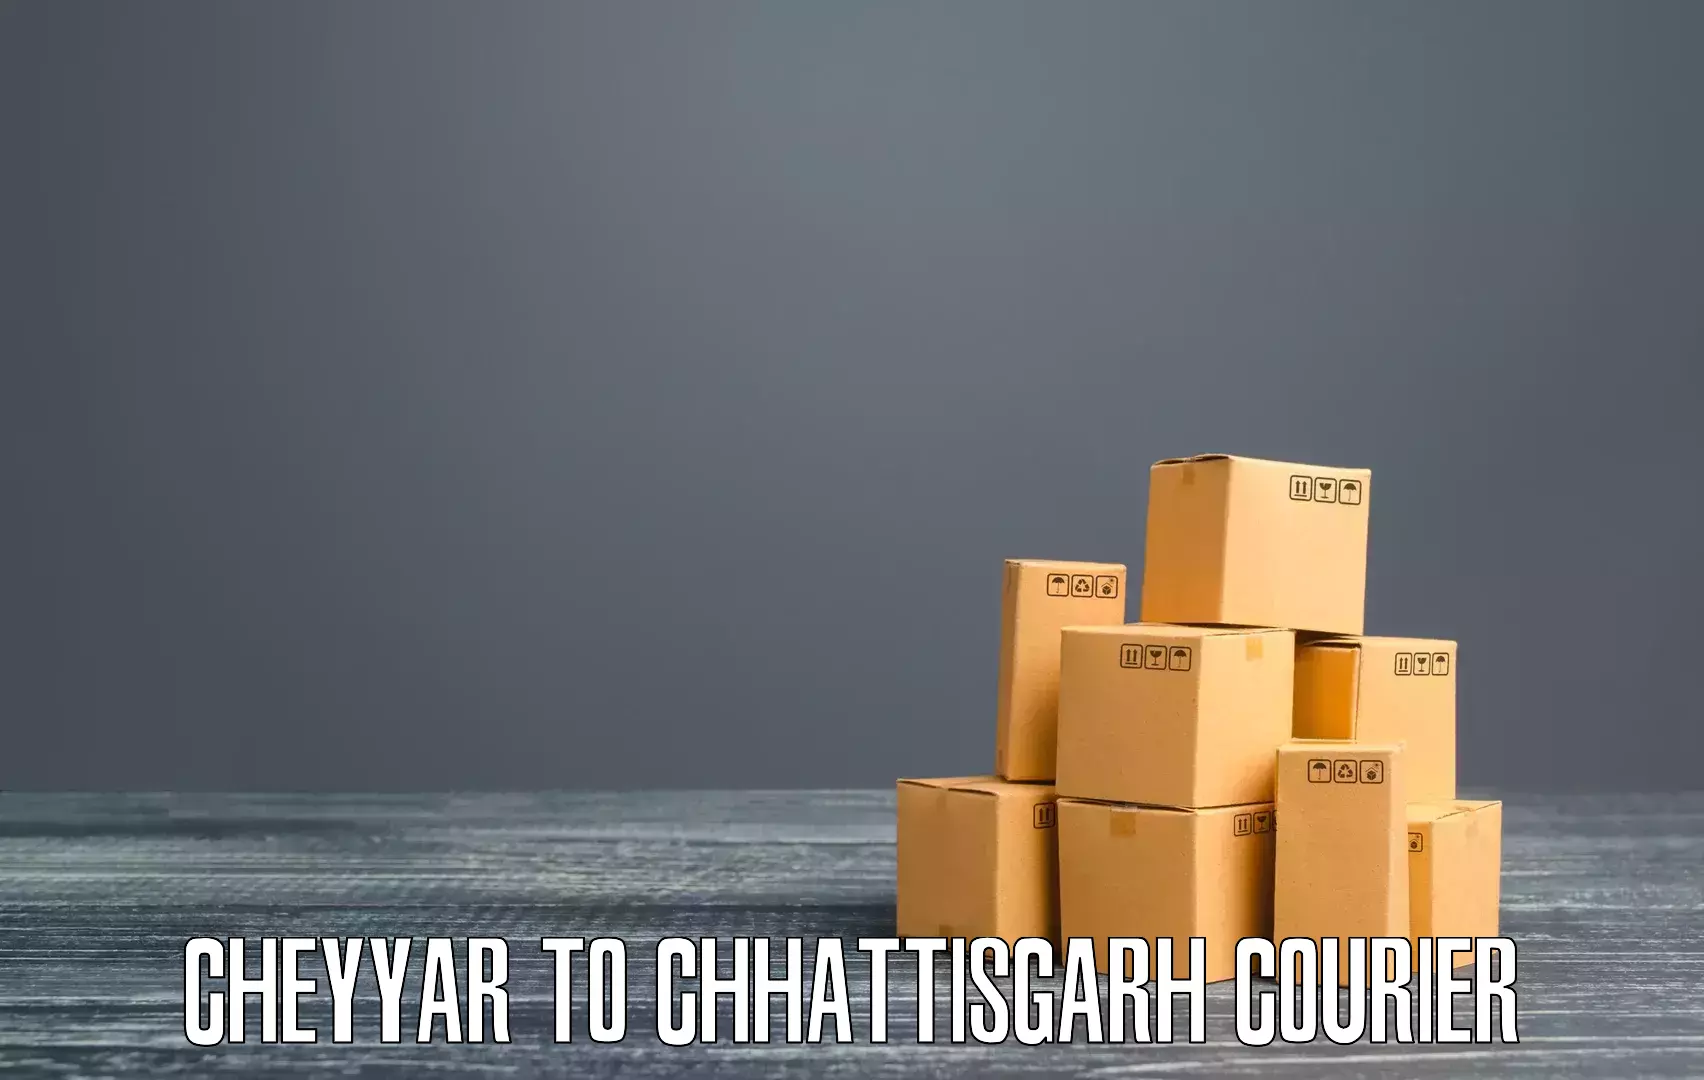 Fast shipping solutions Cheyyar to Wadrafnagar